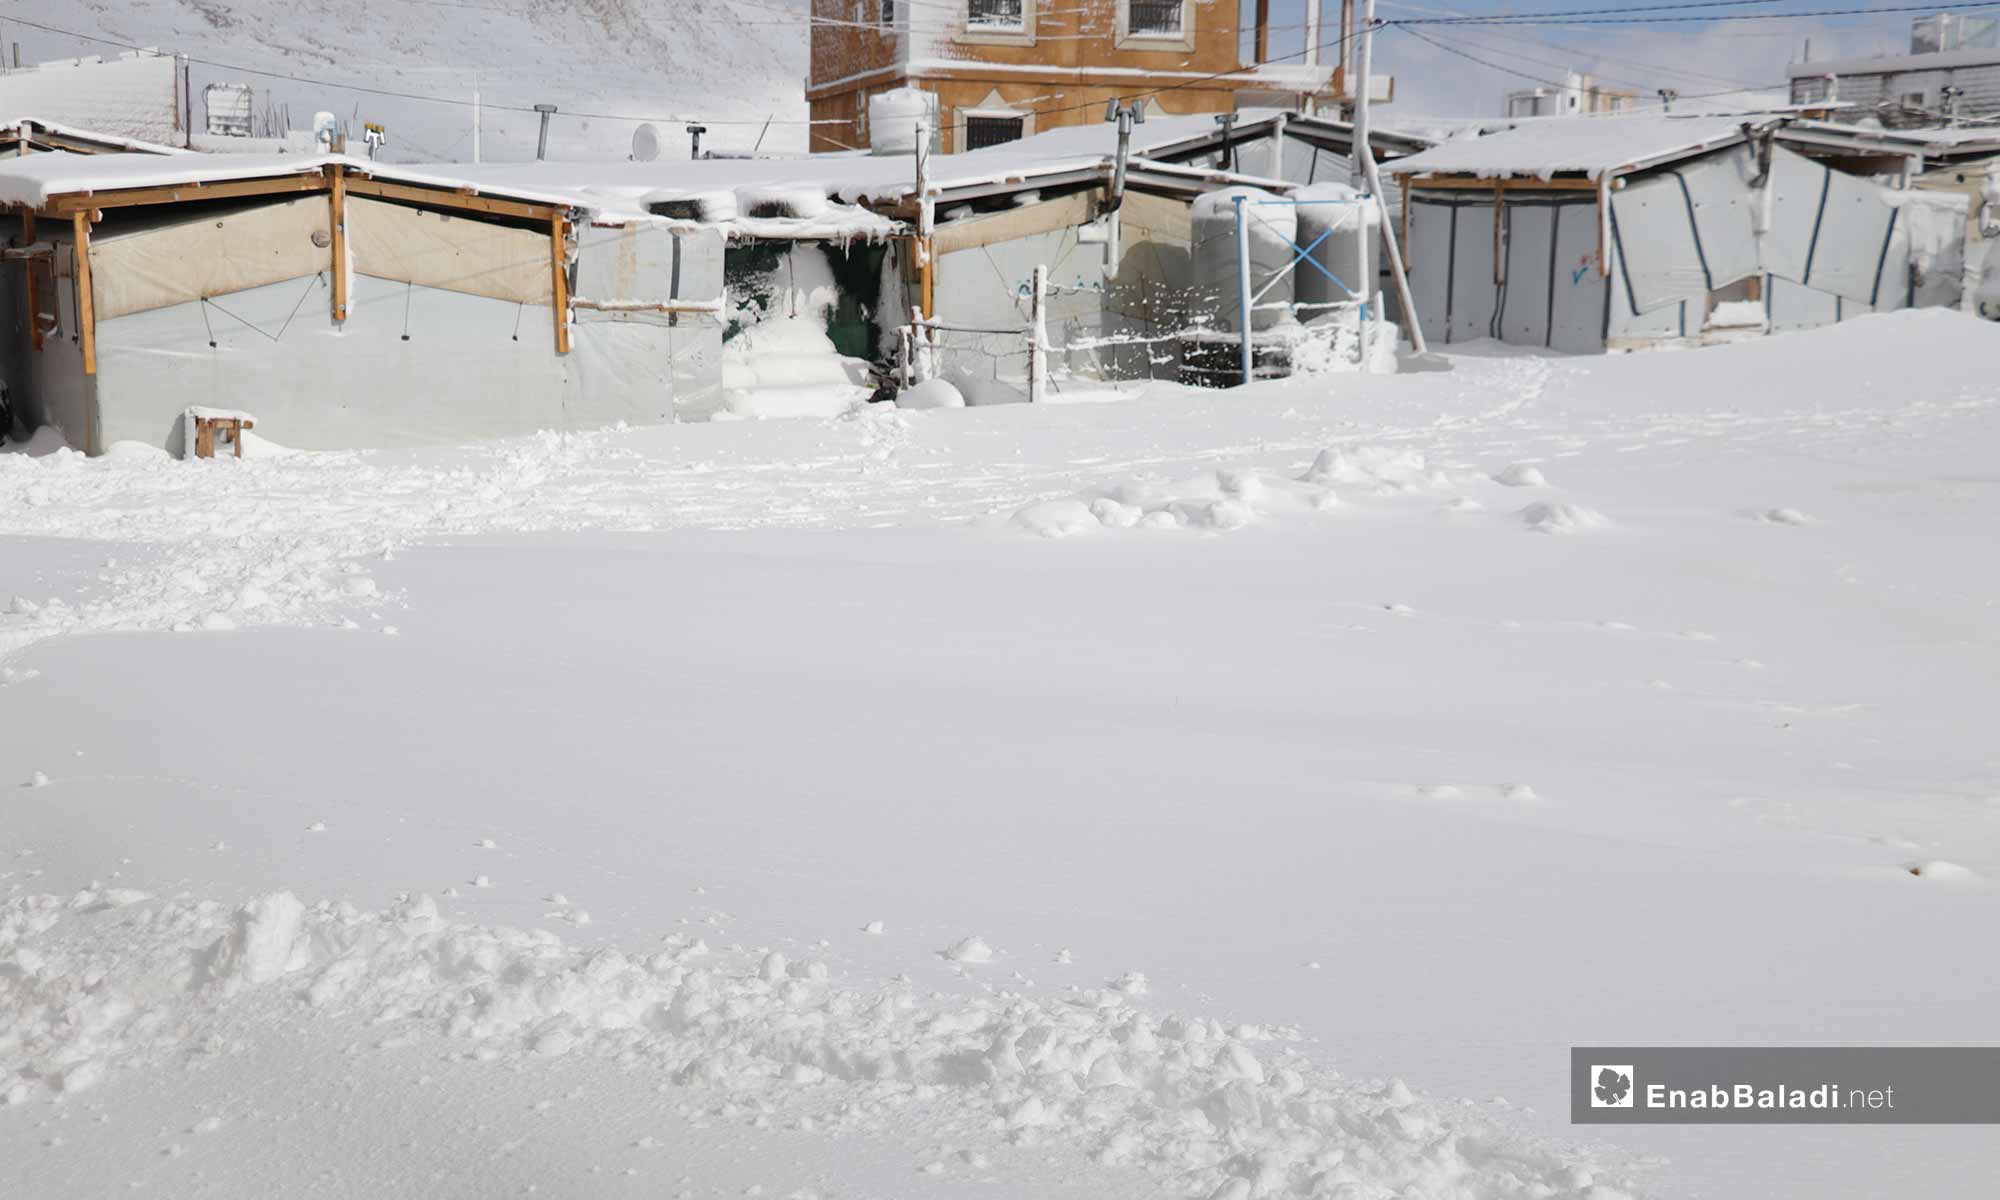 الثلوج تغطي الخيم في مخيمات عرسال بلبنان - 9 من كانون الثاني 2019 (عنب بلدي)